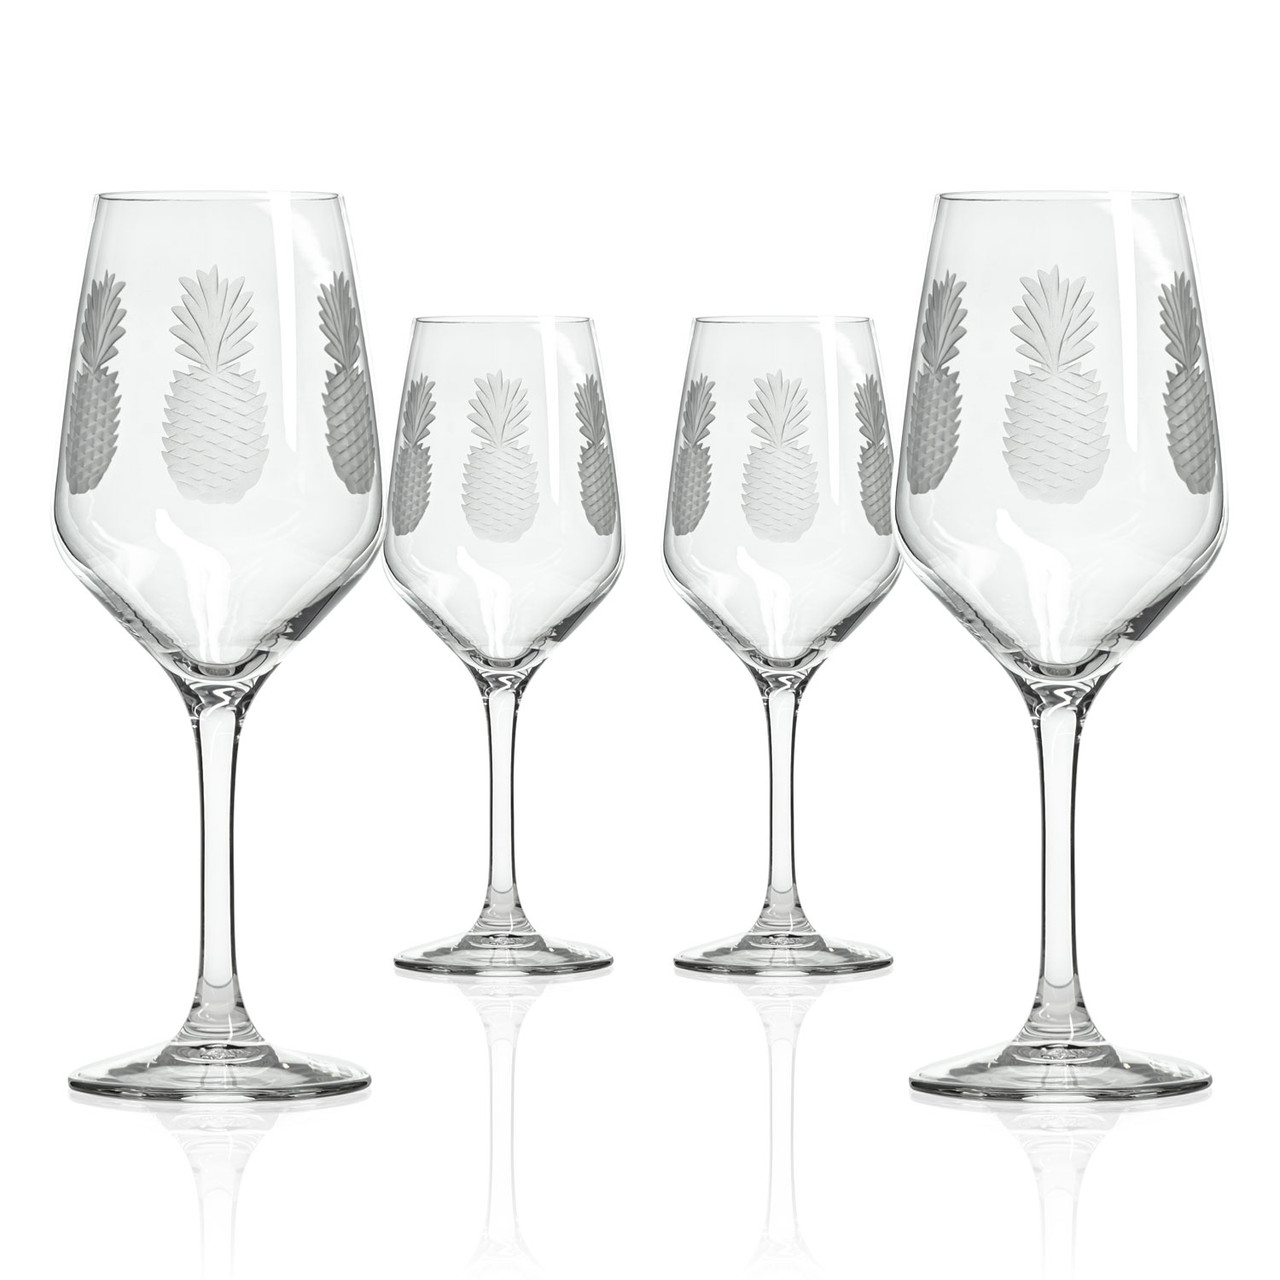 Diamond Wine Glasses, Luxury Barware for Red and White Wine